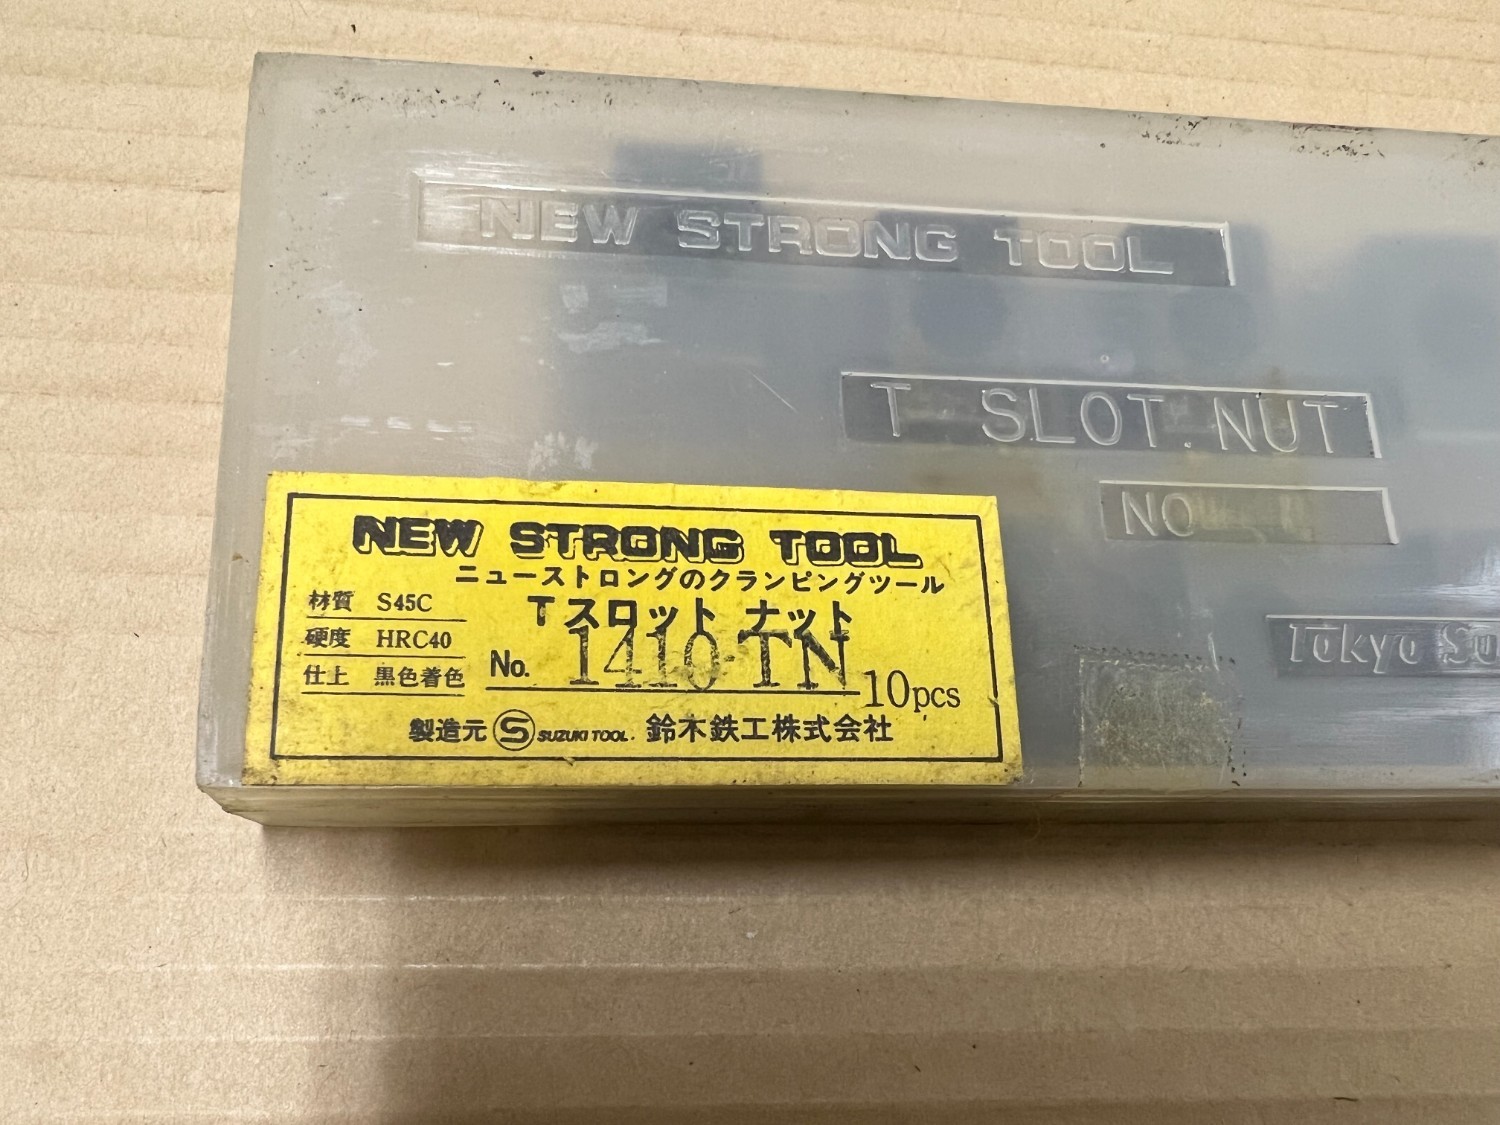 中古その他 【Tスロットナット】1410TN(20個） ニューストロングツール/NEW STRONG TOOL